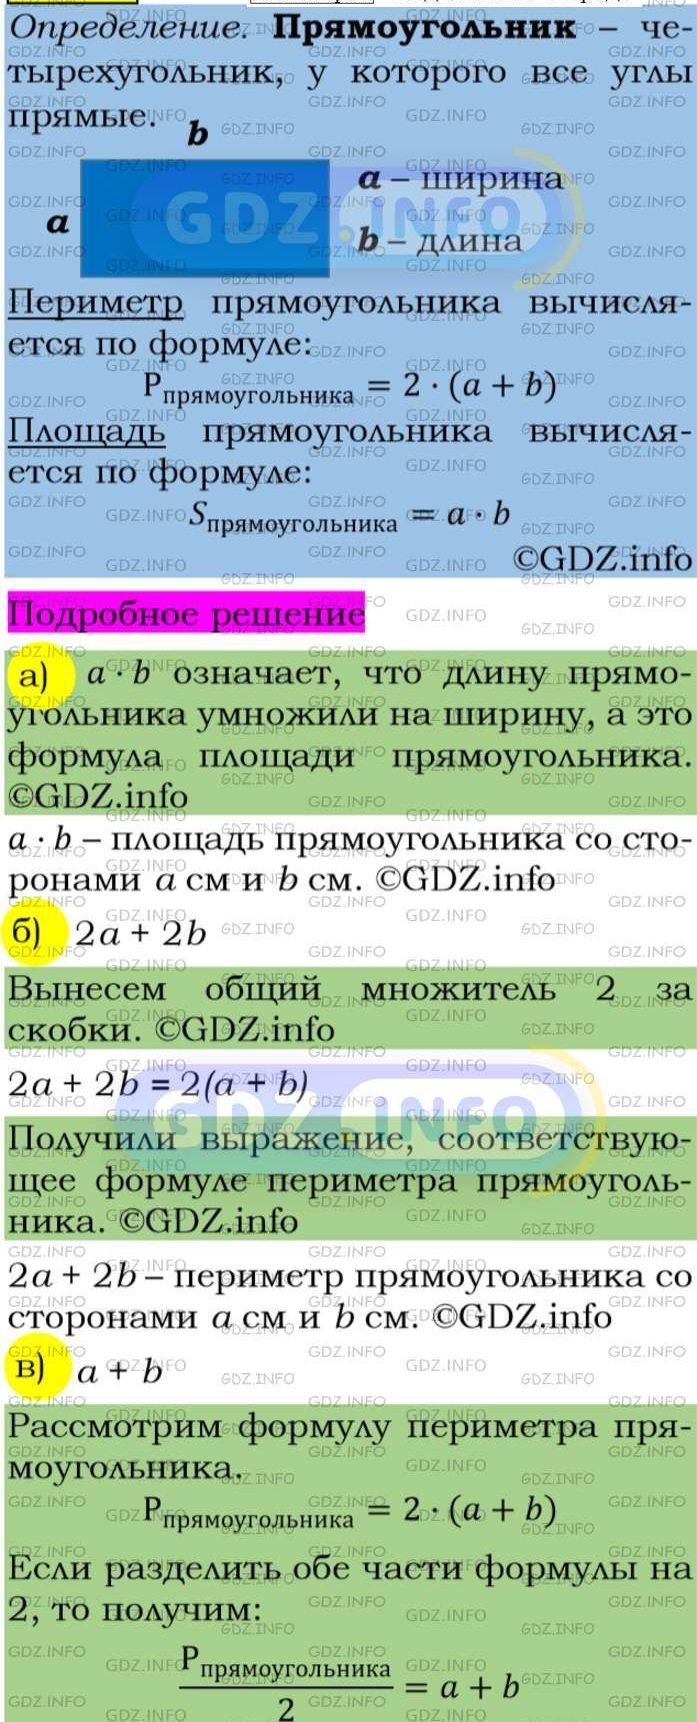 Фото подробного решения: Номер задания №53 из ГДЗ по Алгебре 7 класс: Макарычев Ю.Н.